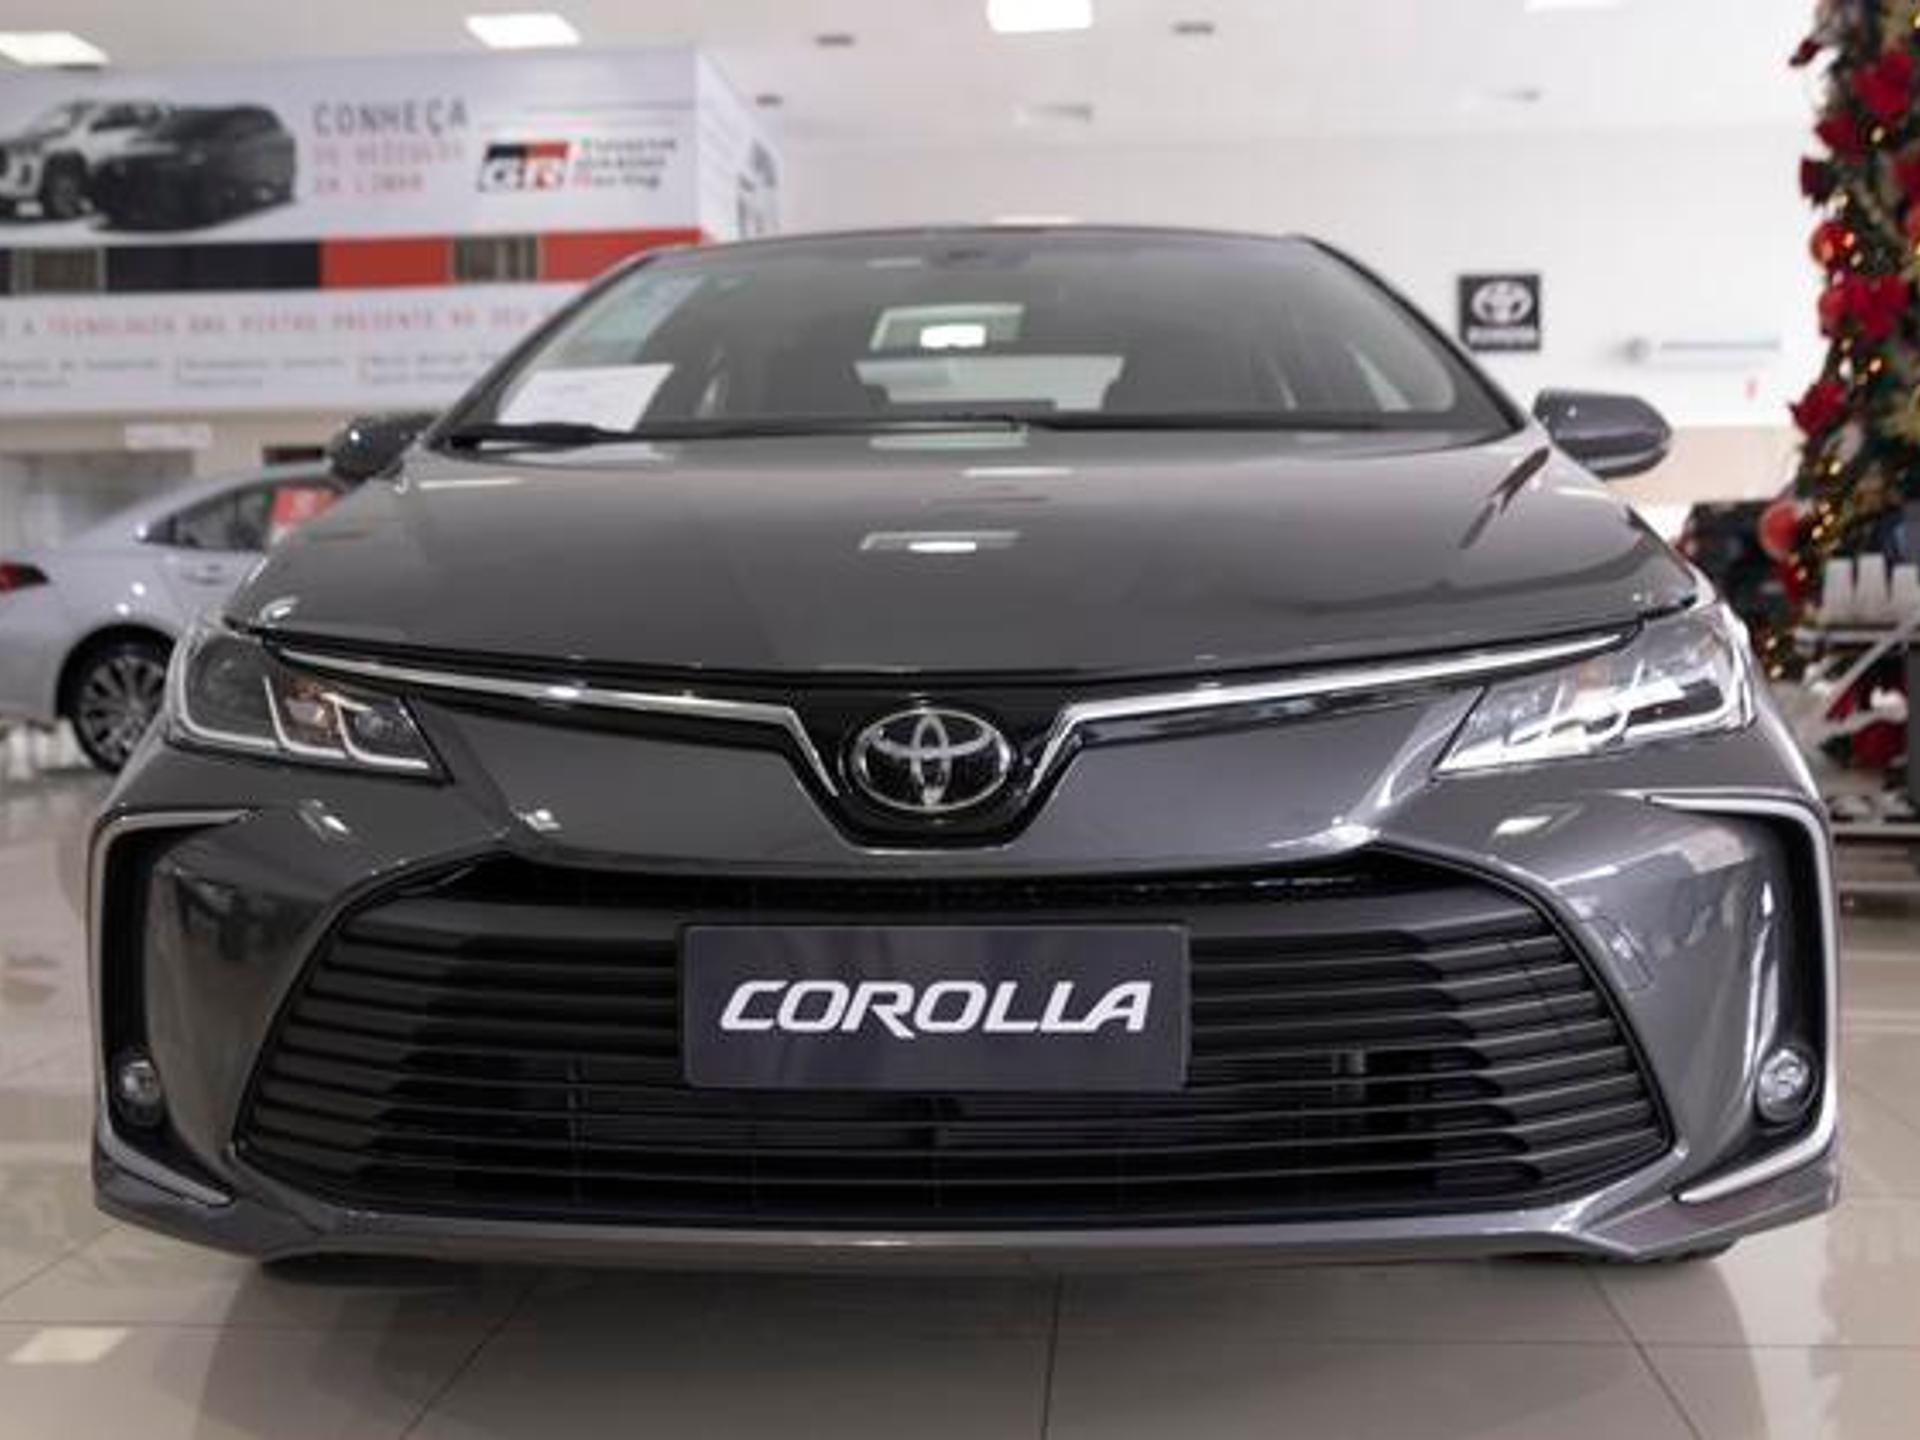 Toyota Corolla para PcD está com desconto de R$ 24 mil